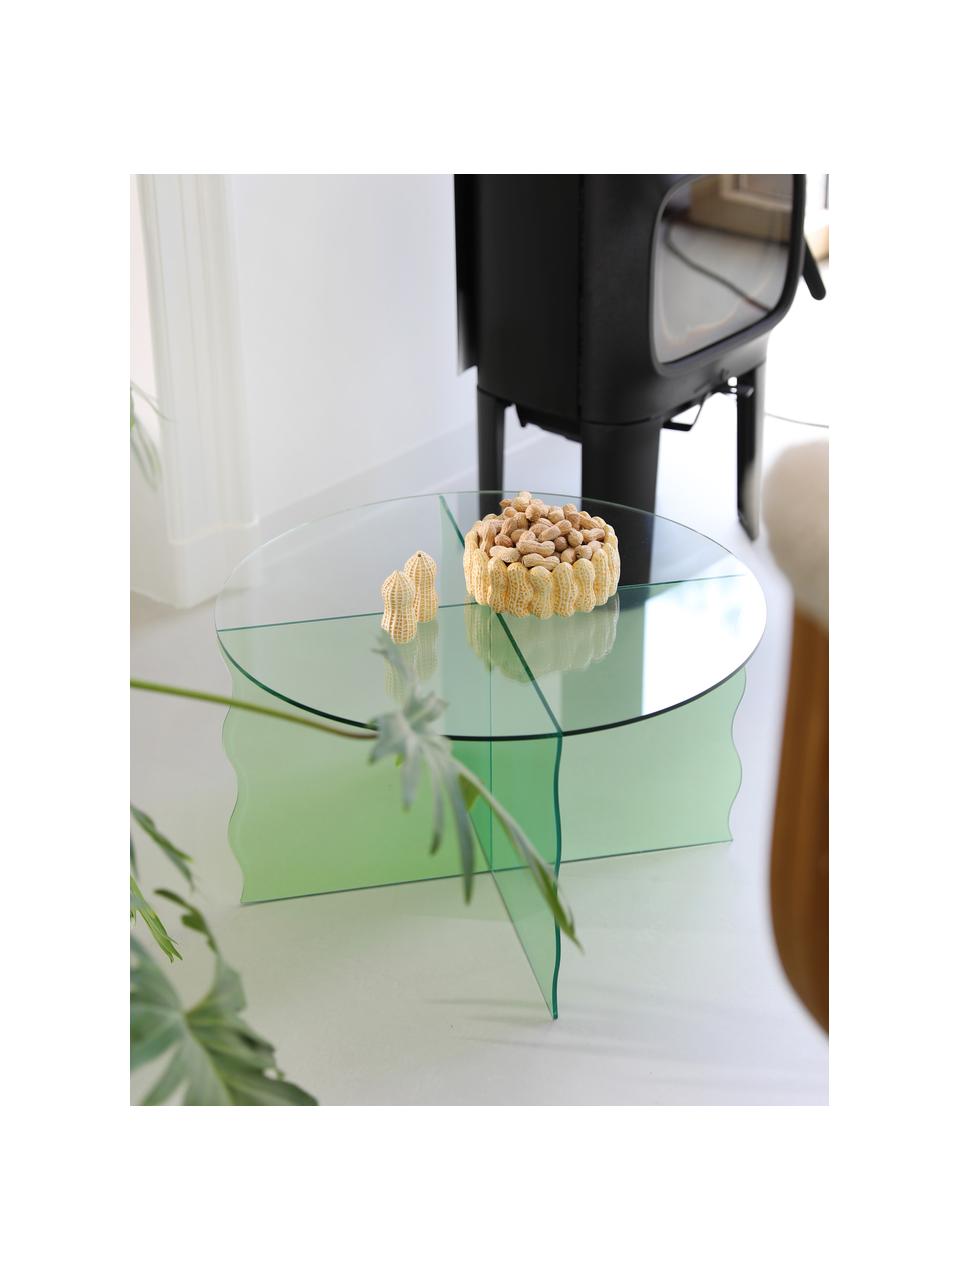 Kulatý skleněný konferenční stolek Wobbly, Sklo, Zelená, transparentní, Ø 60 cm, V 35 cm